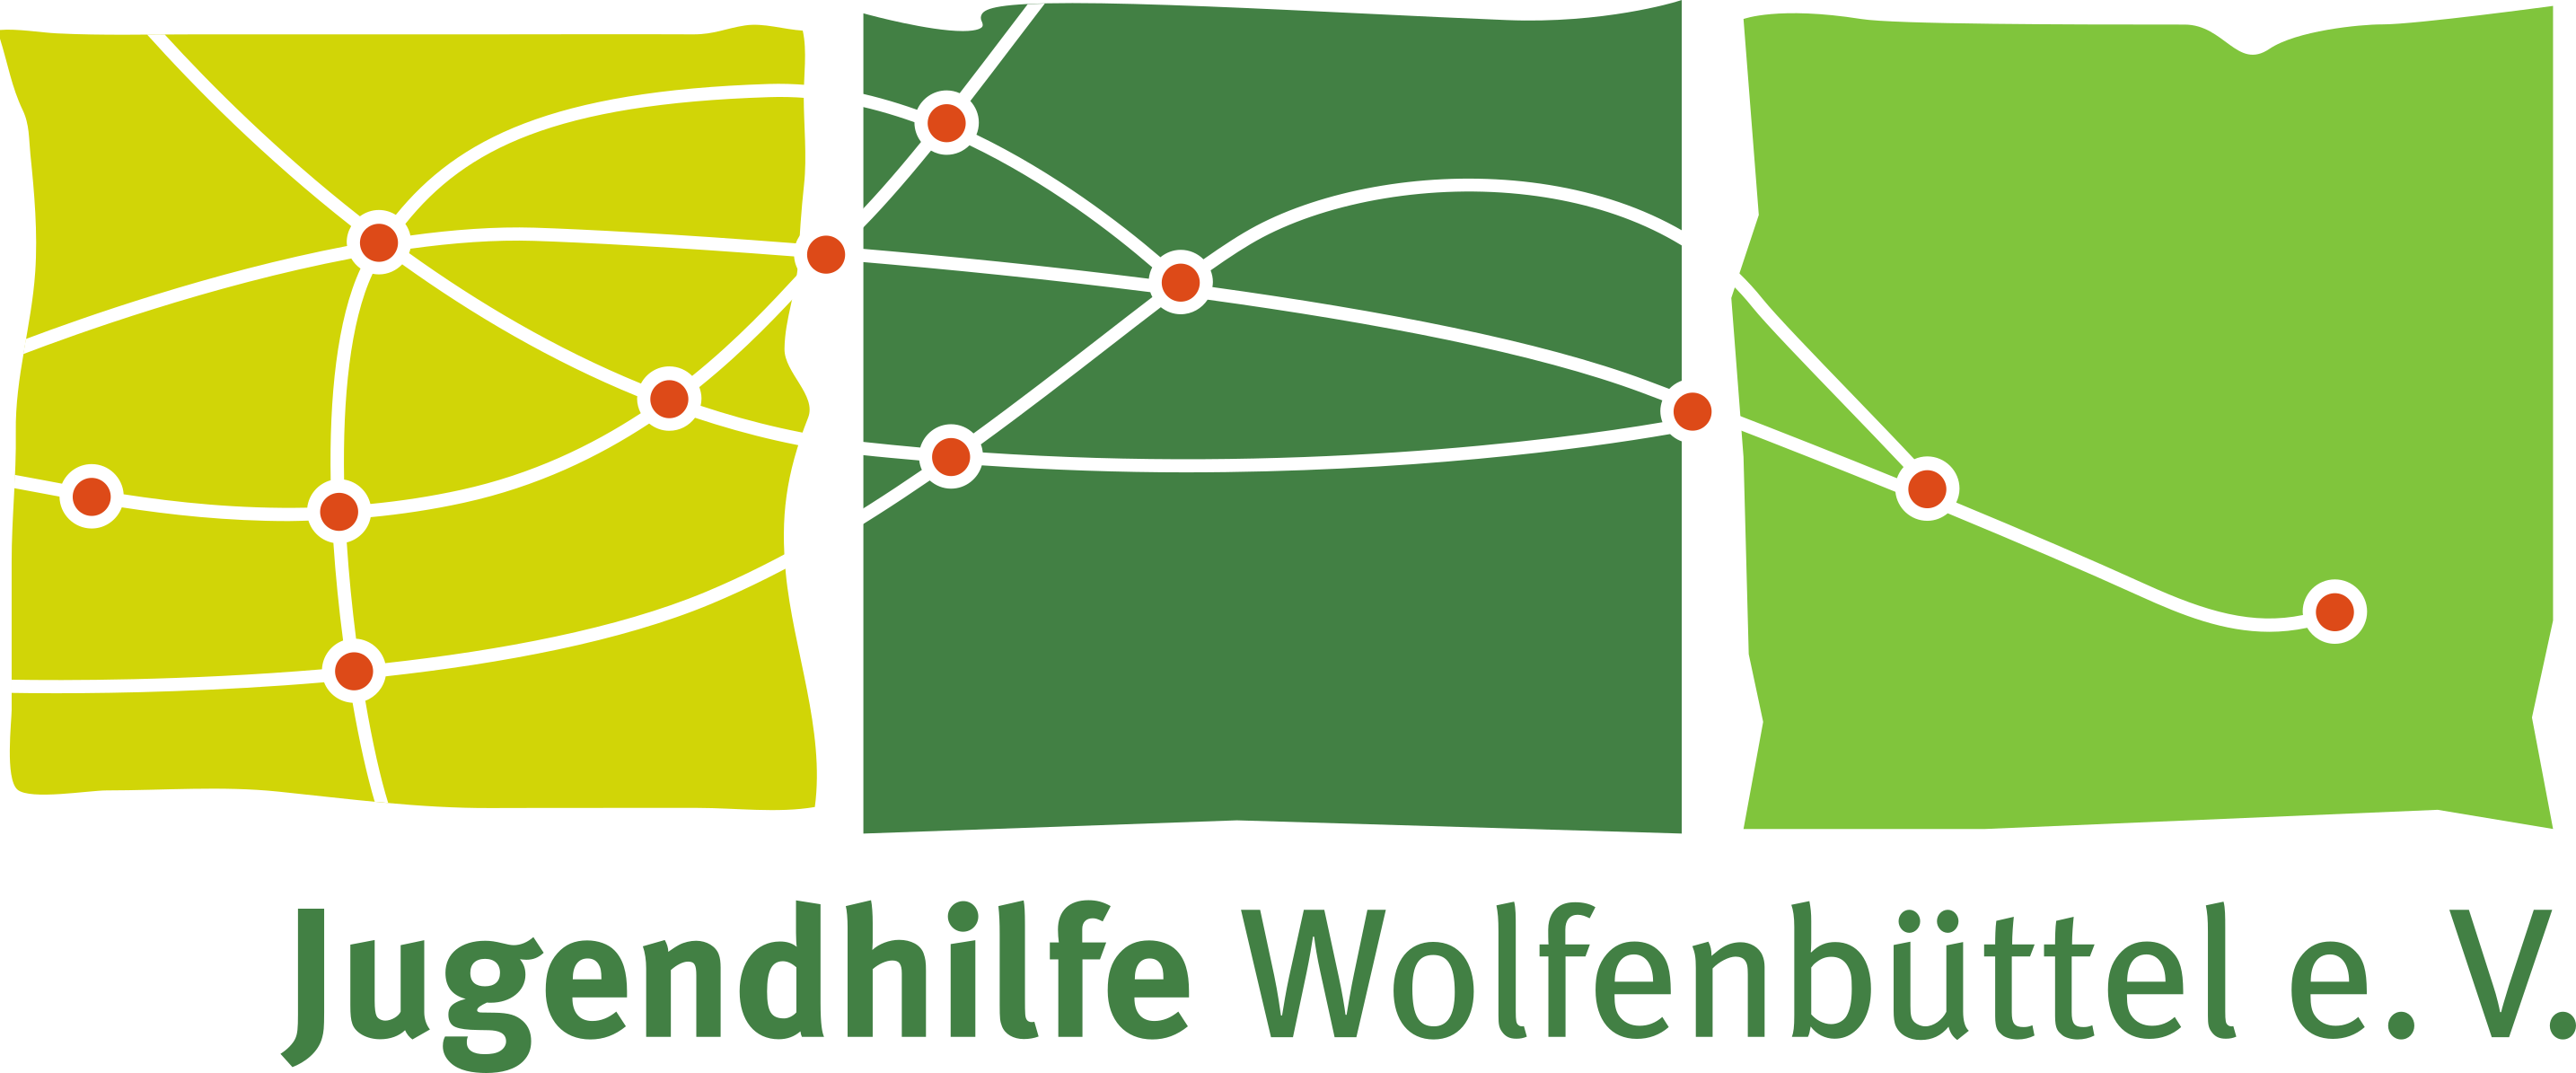 Jugendhilfe Wolfenbüttel e.V.